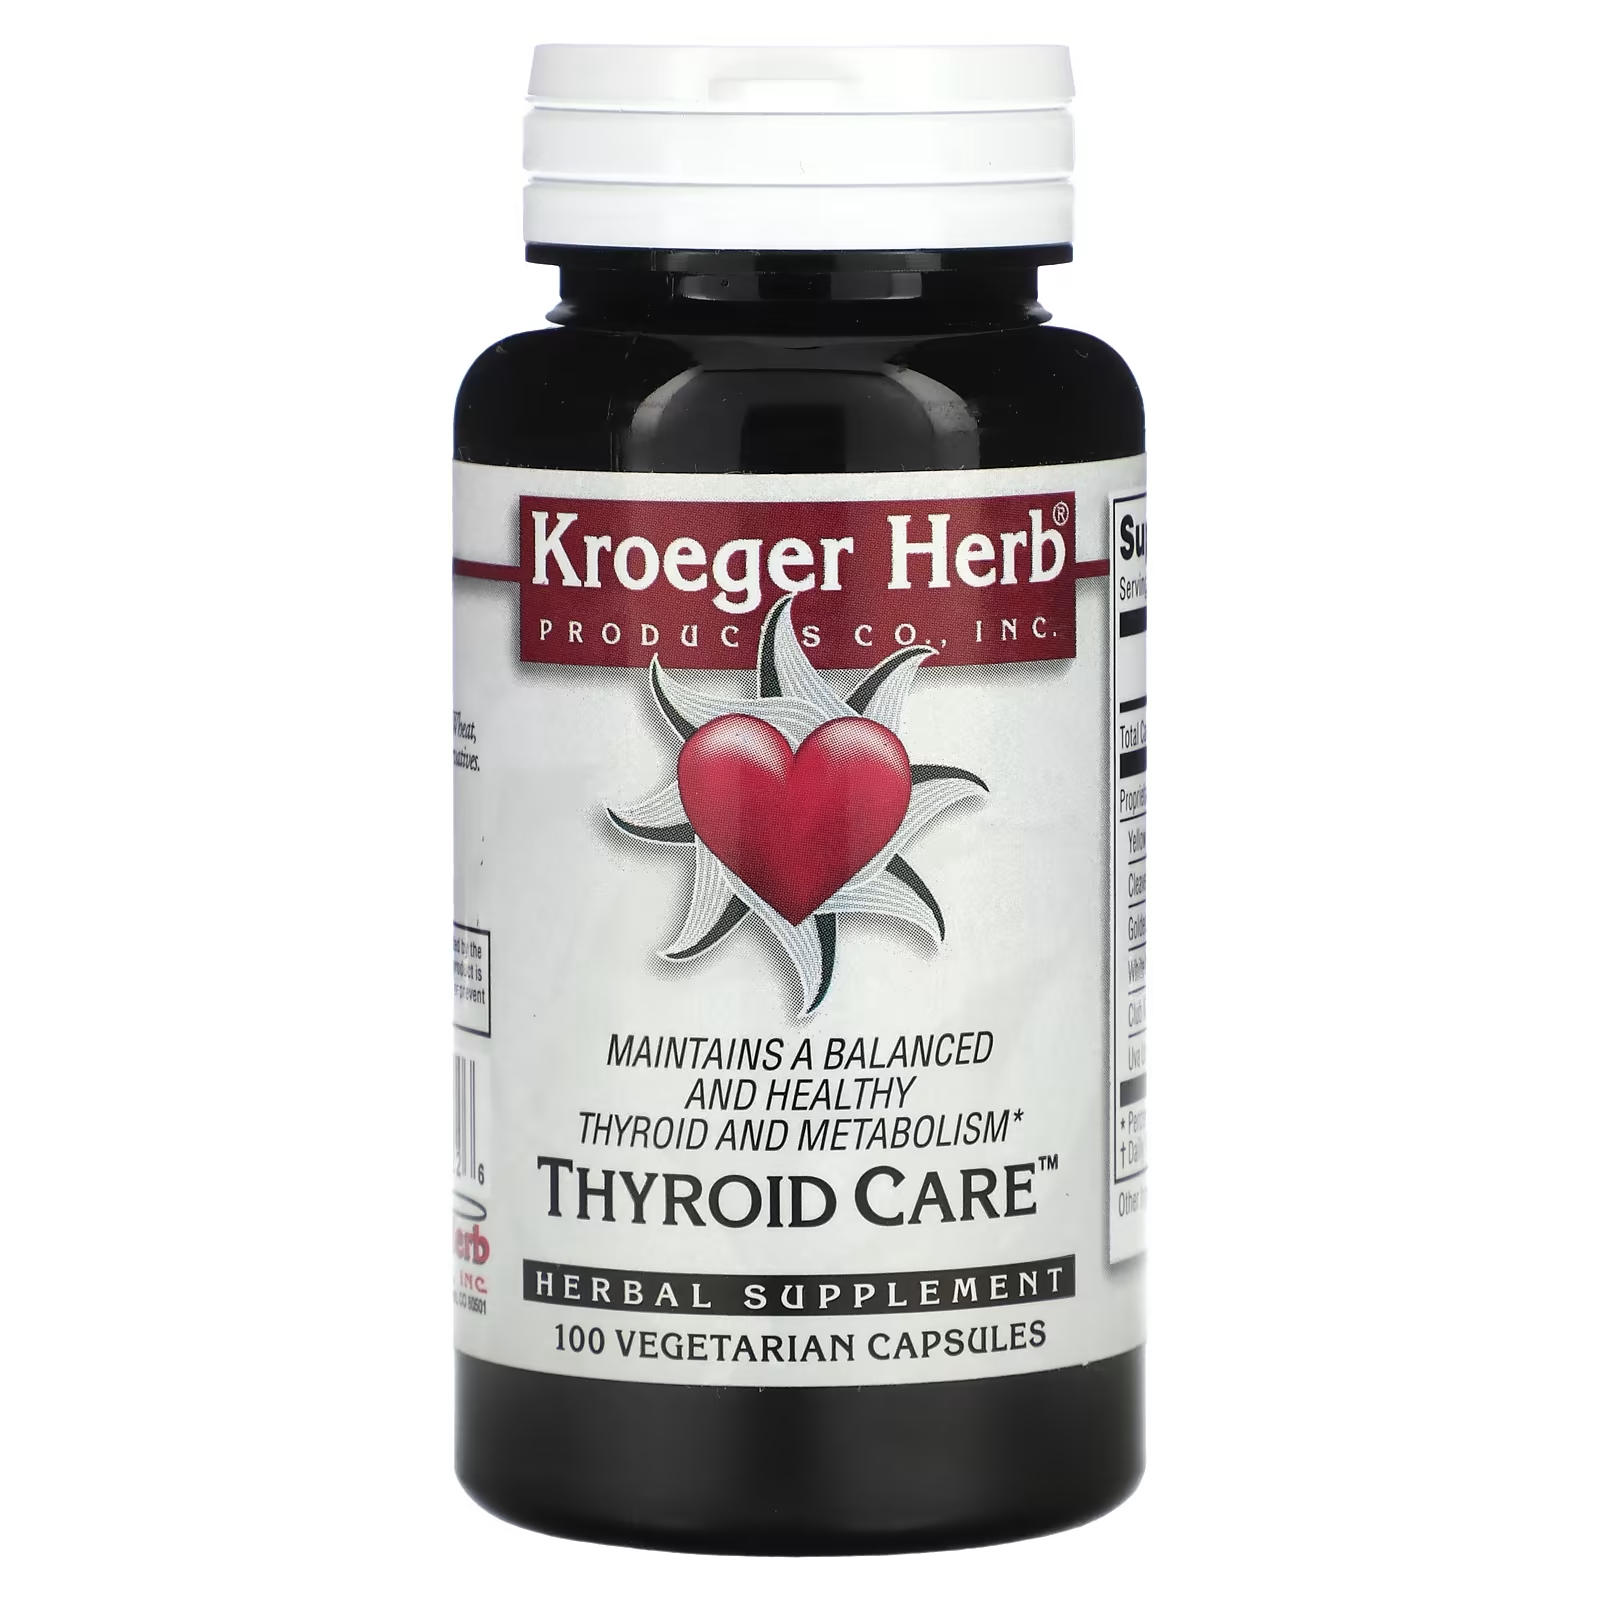 Пищевая добавка Kroeger Herb Co для ухода за щитовидной железой, 100 вегетарианских капсул фото